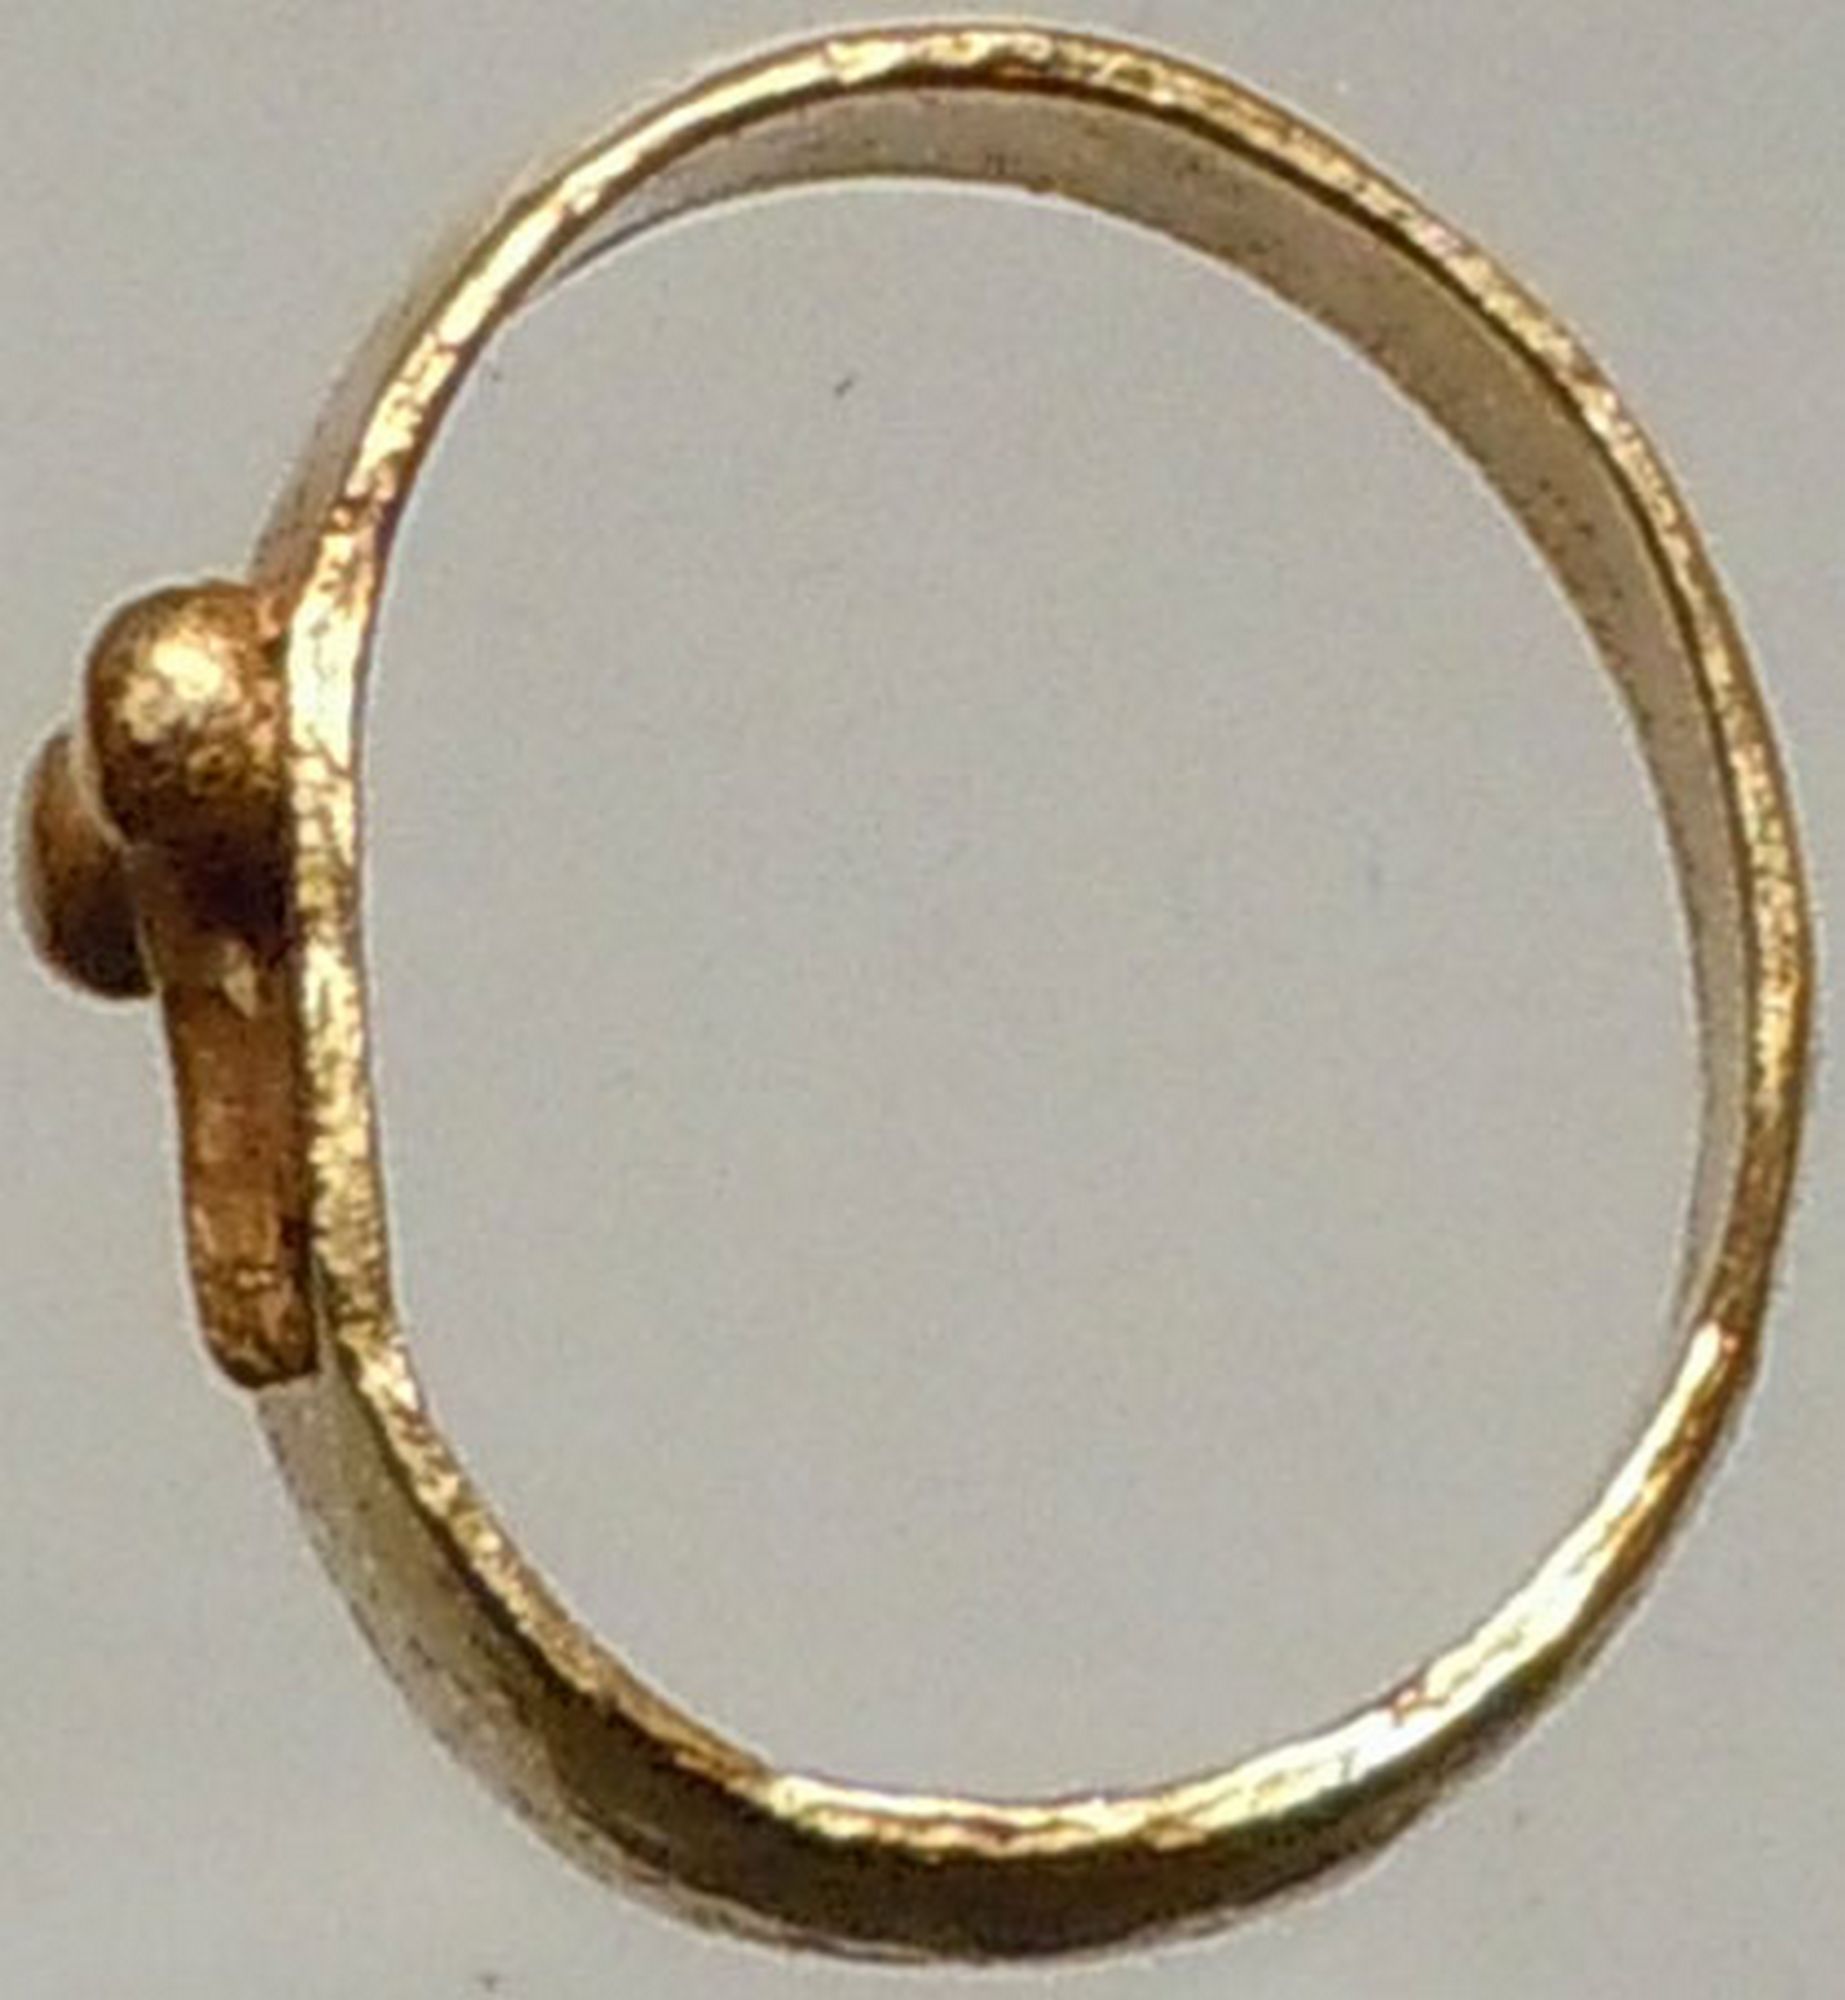 Ancient Genuine Roman Gold Baby FASCINUS Ring Amulet Artifact i22871 | eBay